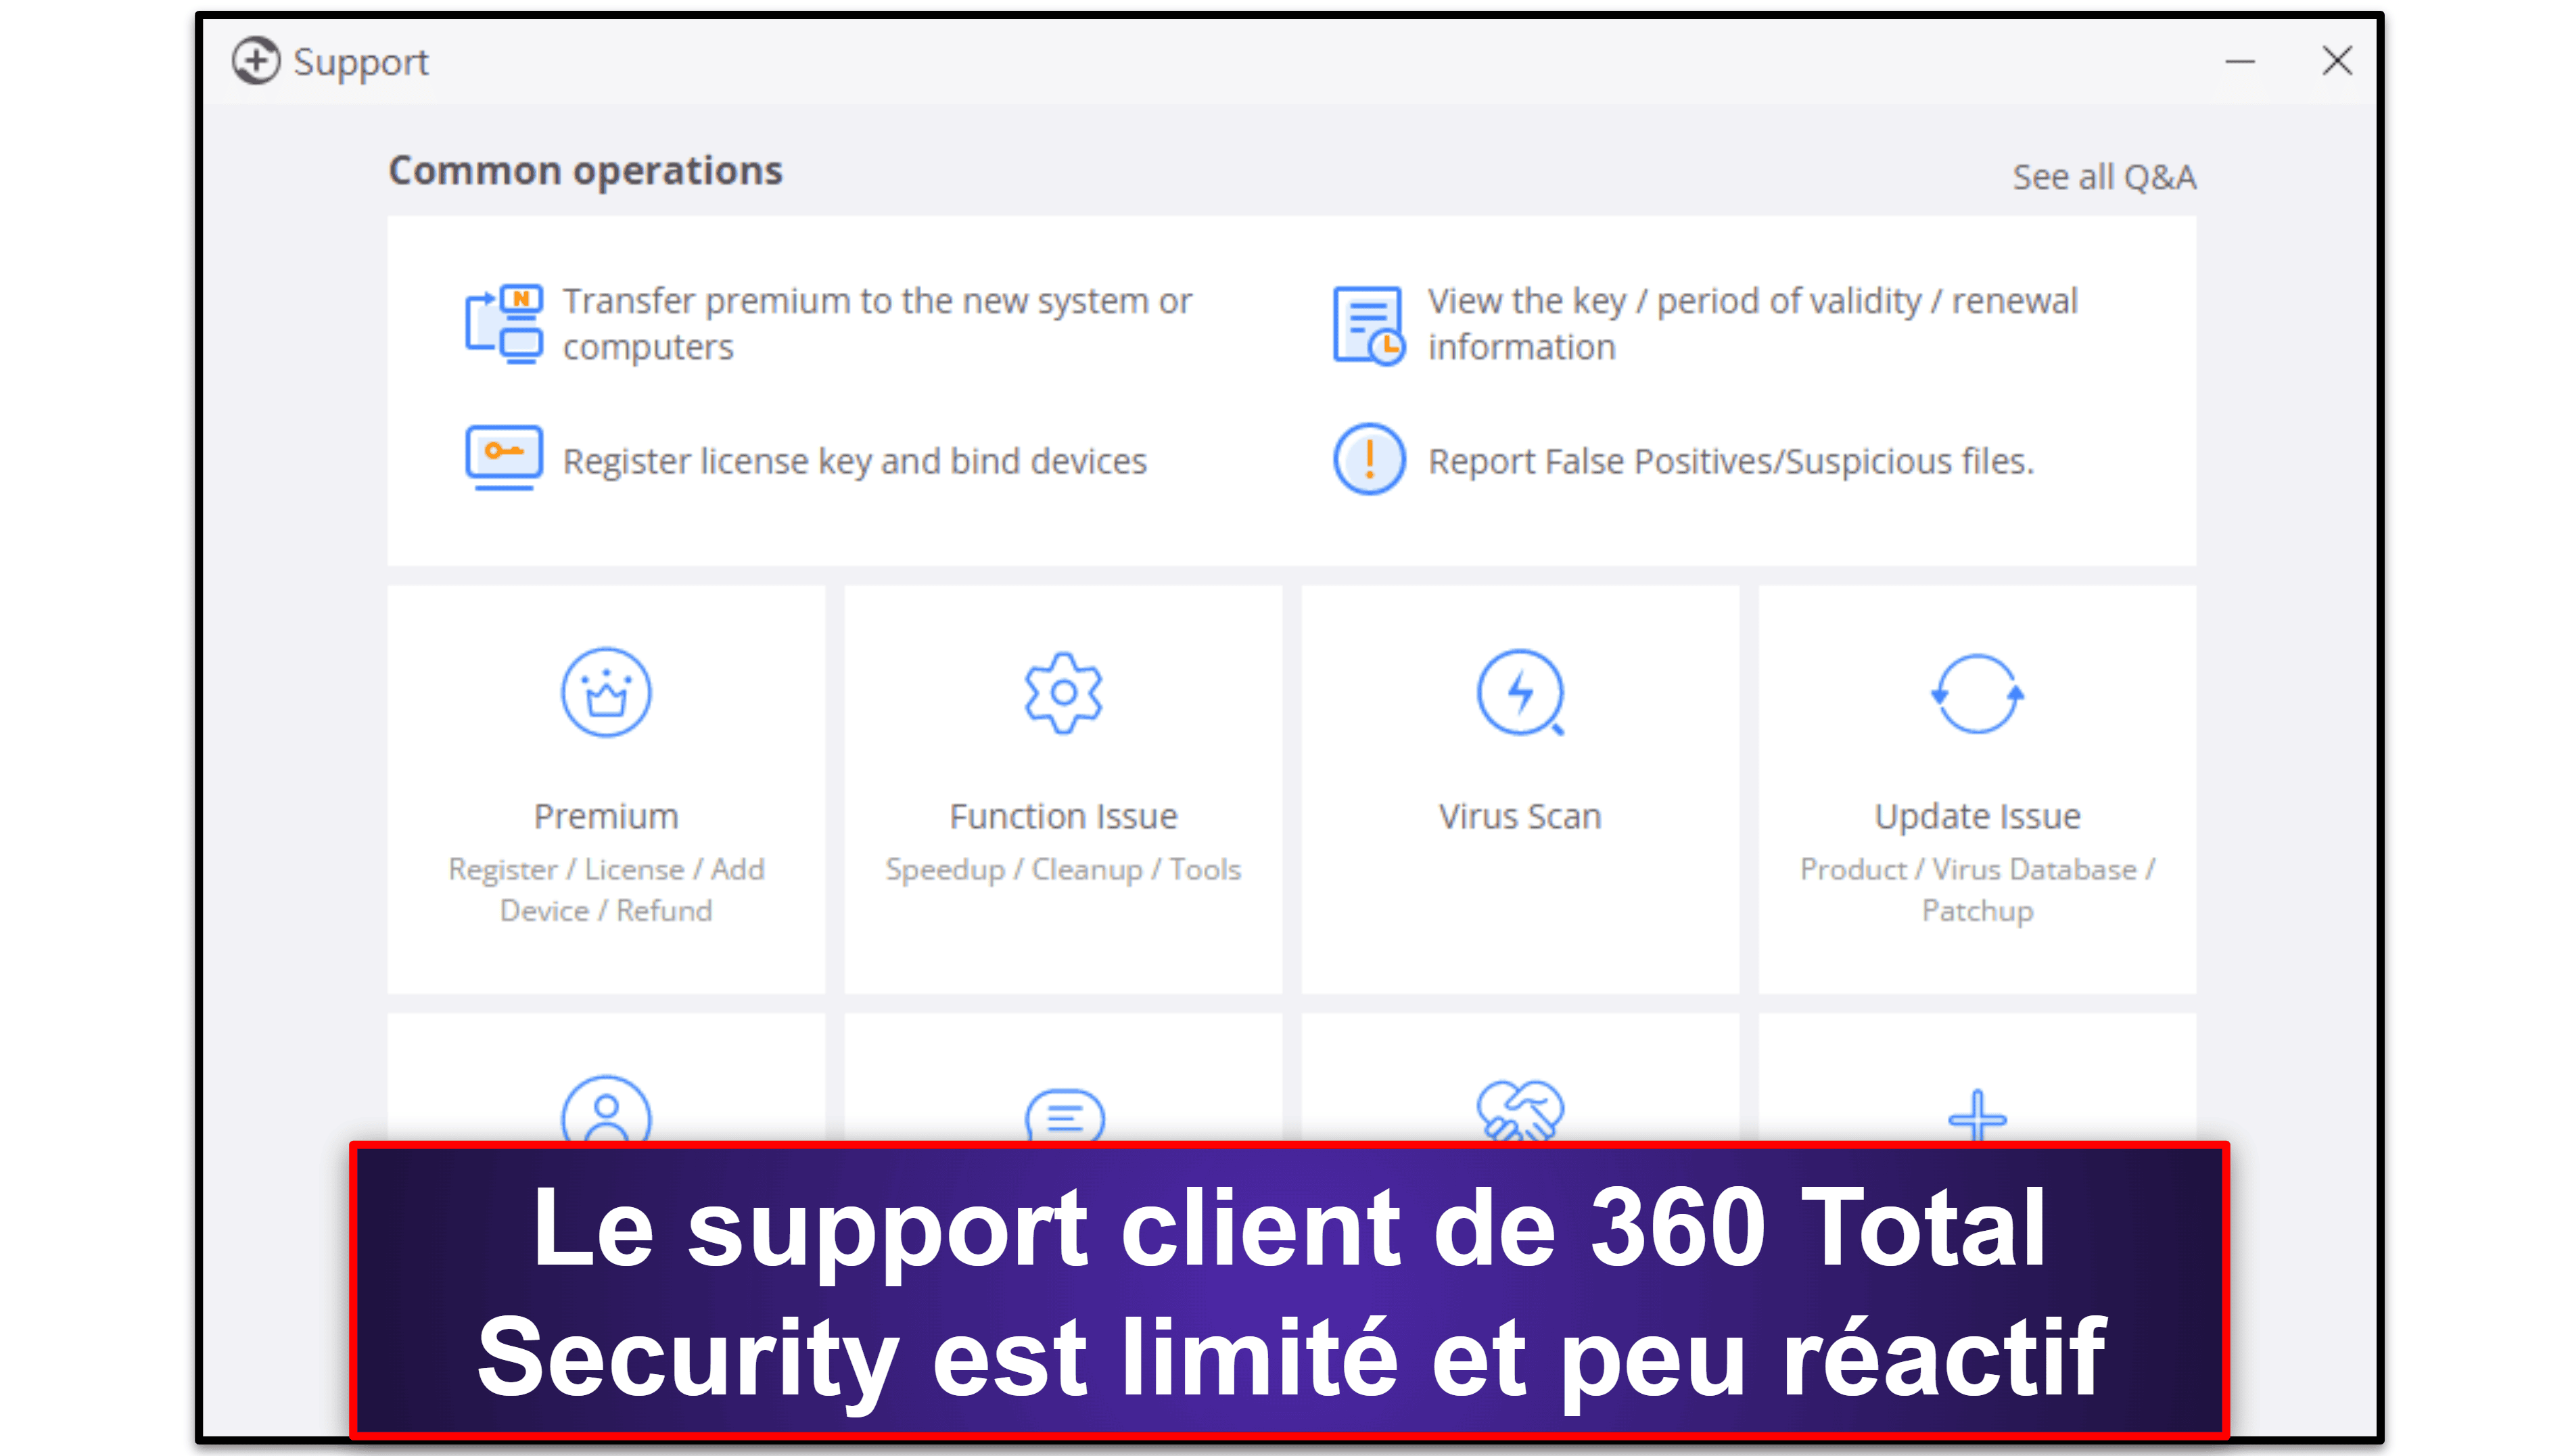 Support client de 360 Total Security